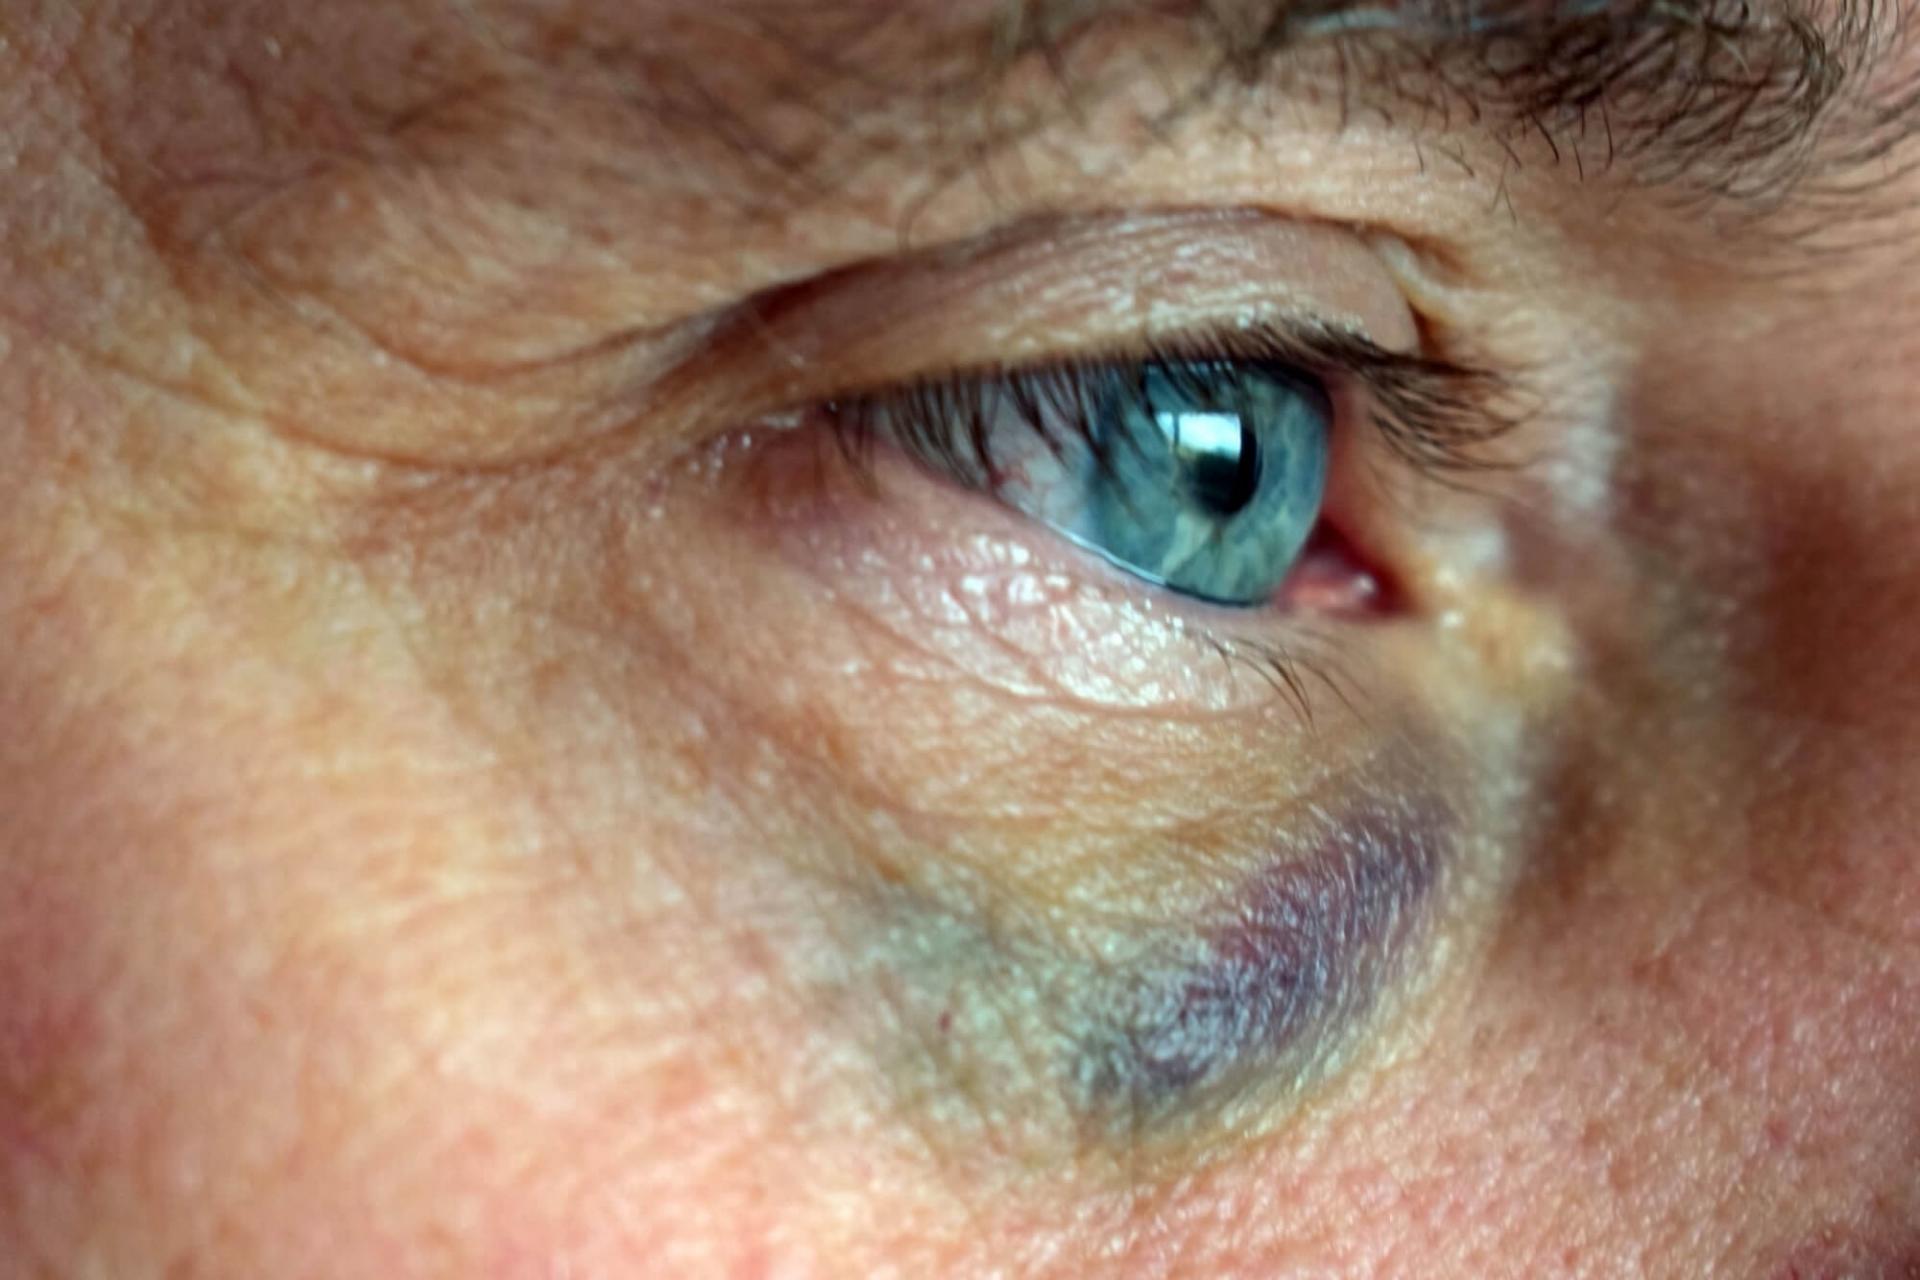 Blodkärlen i ögat kan brista om ögat utsätts för trubbigt våld och den vita delen av ögat (sklera) ser röd och blodsprängd ut.